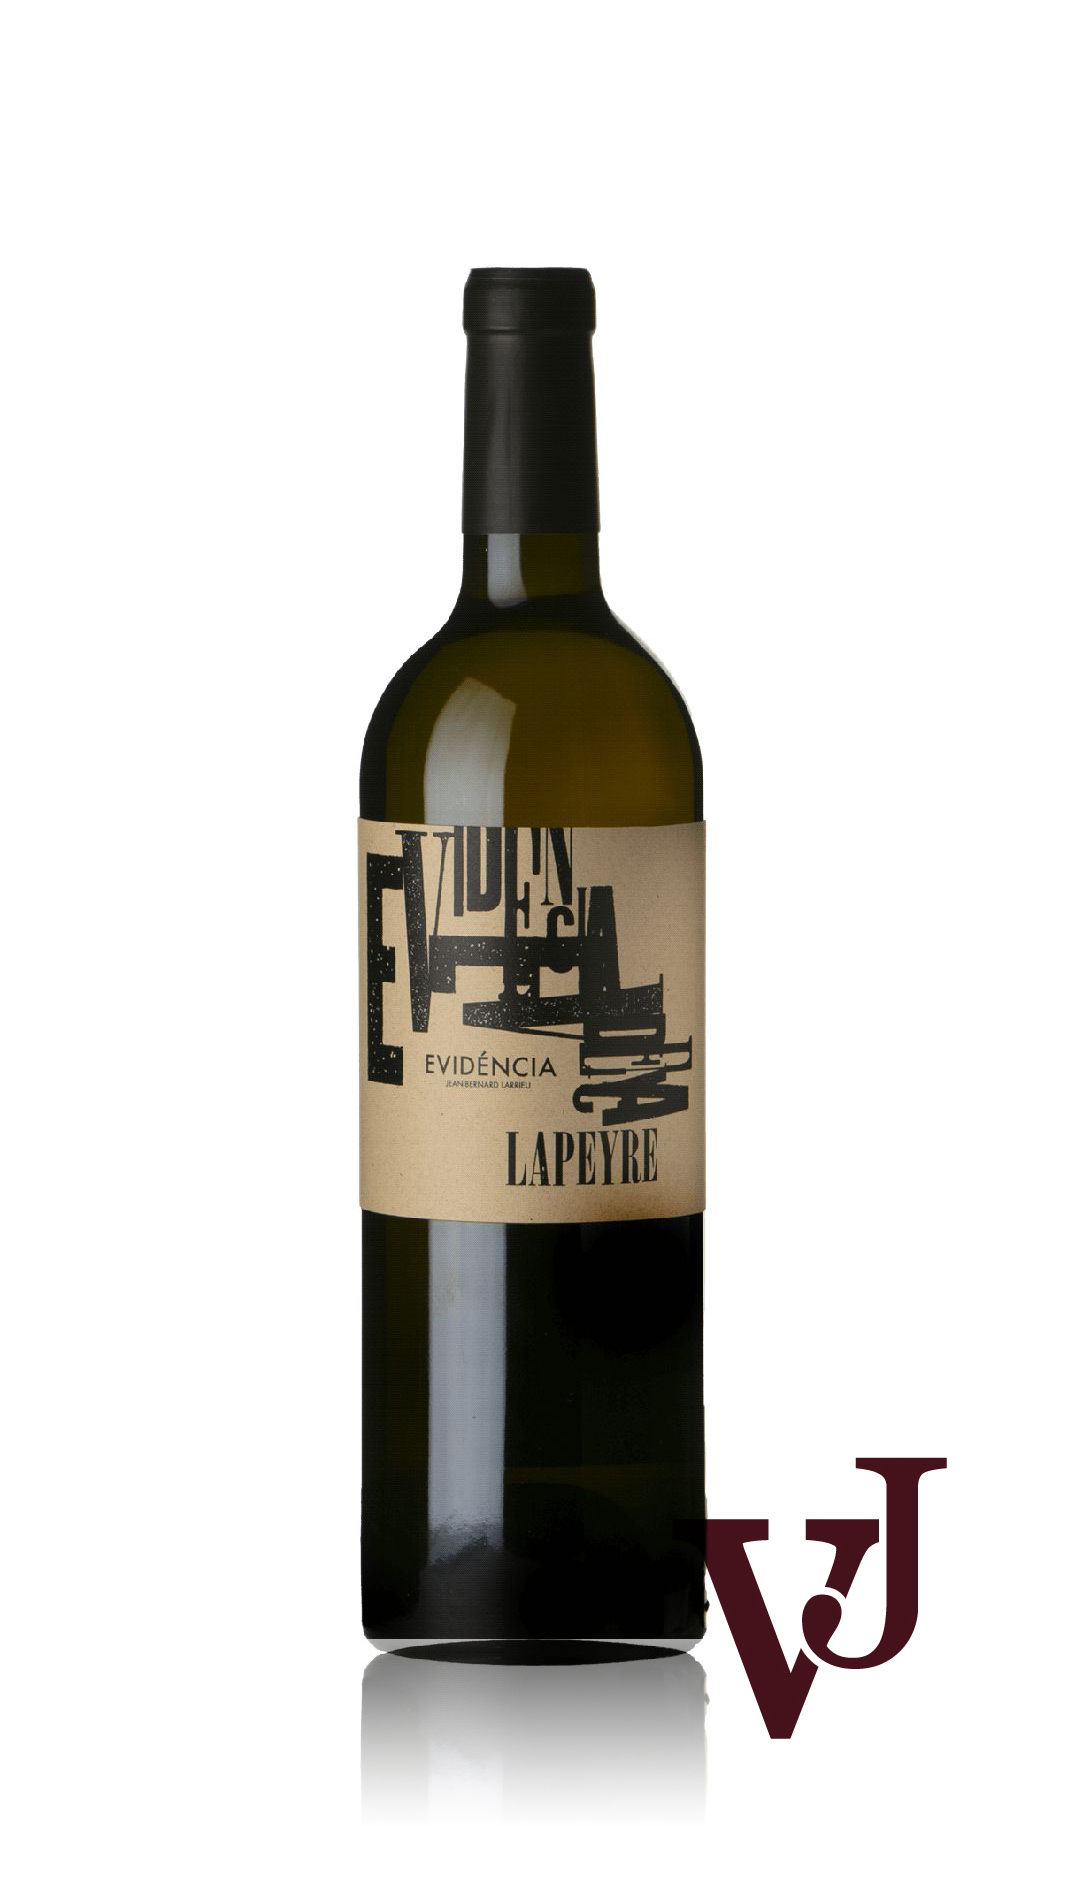 Vitt vin - Clos Lapeyre Evidencia 2021 artikel nummer 9459201 från producenten Clos Lapeyre från Frankrike